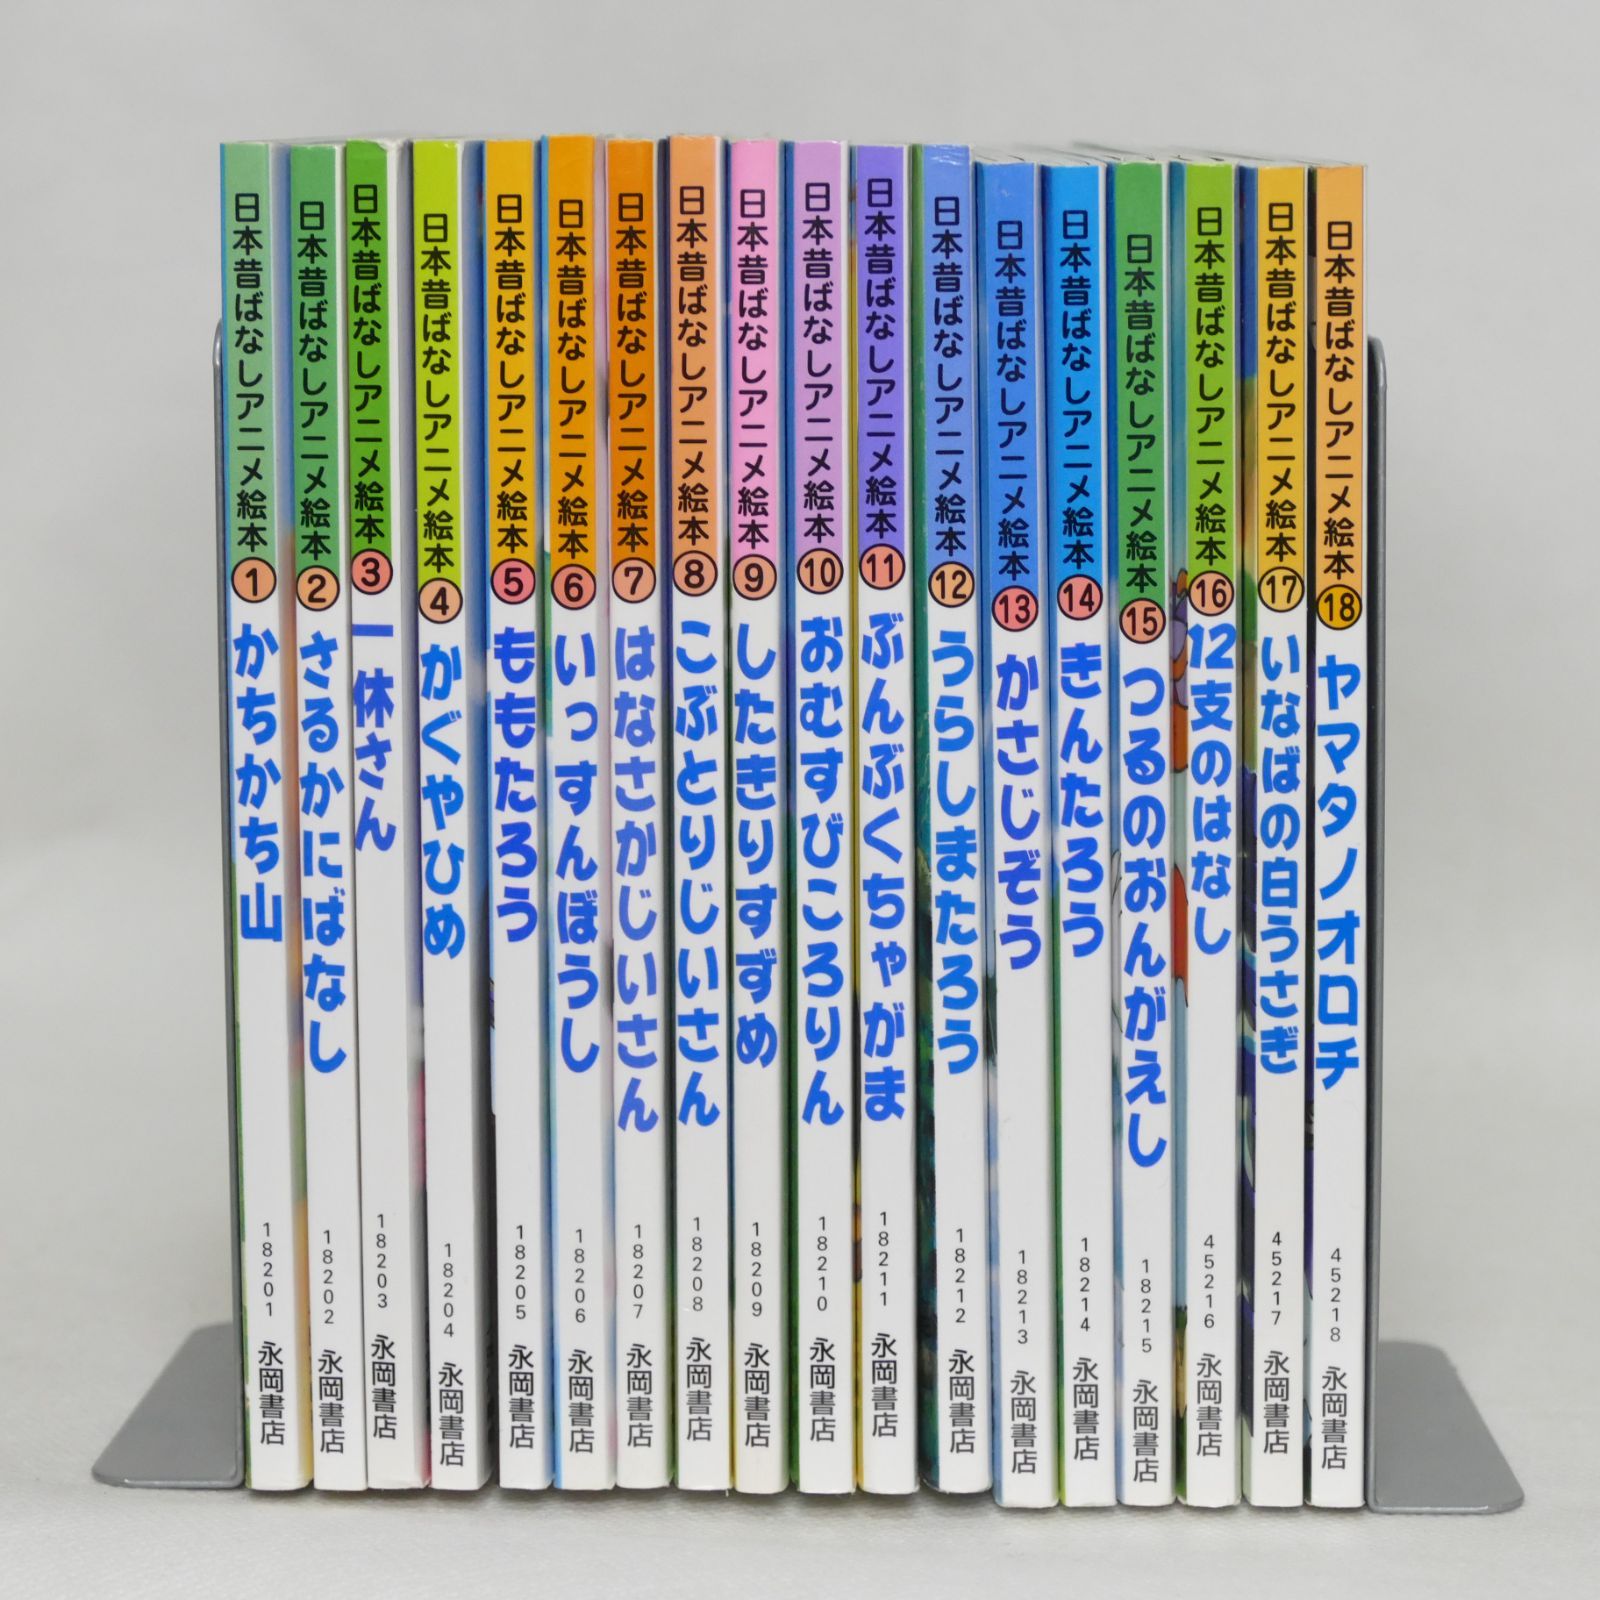 日本昔ばなしアニメ絵本 全18巻 世界名作アニメ絵本 全40巻 全巻58巻セット